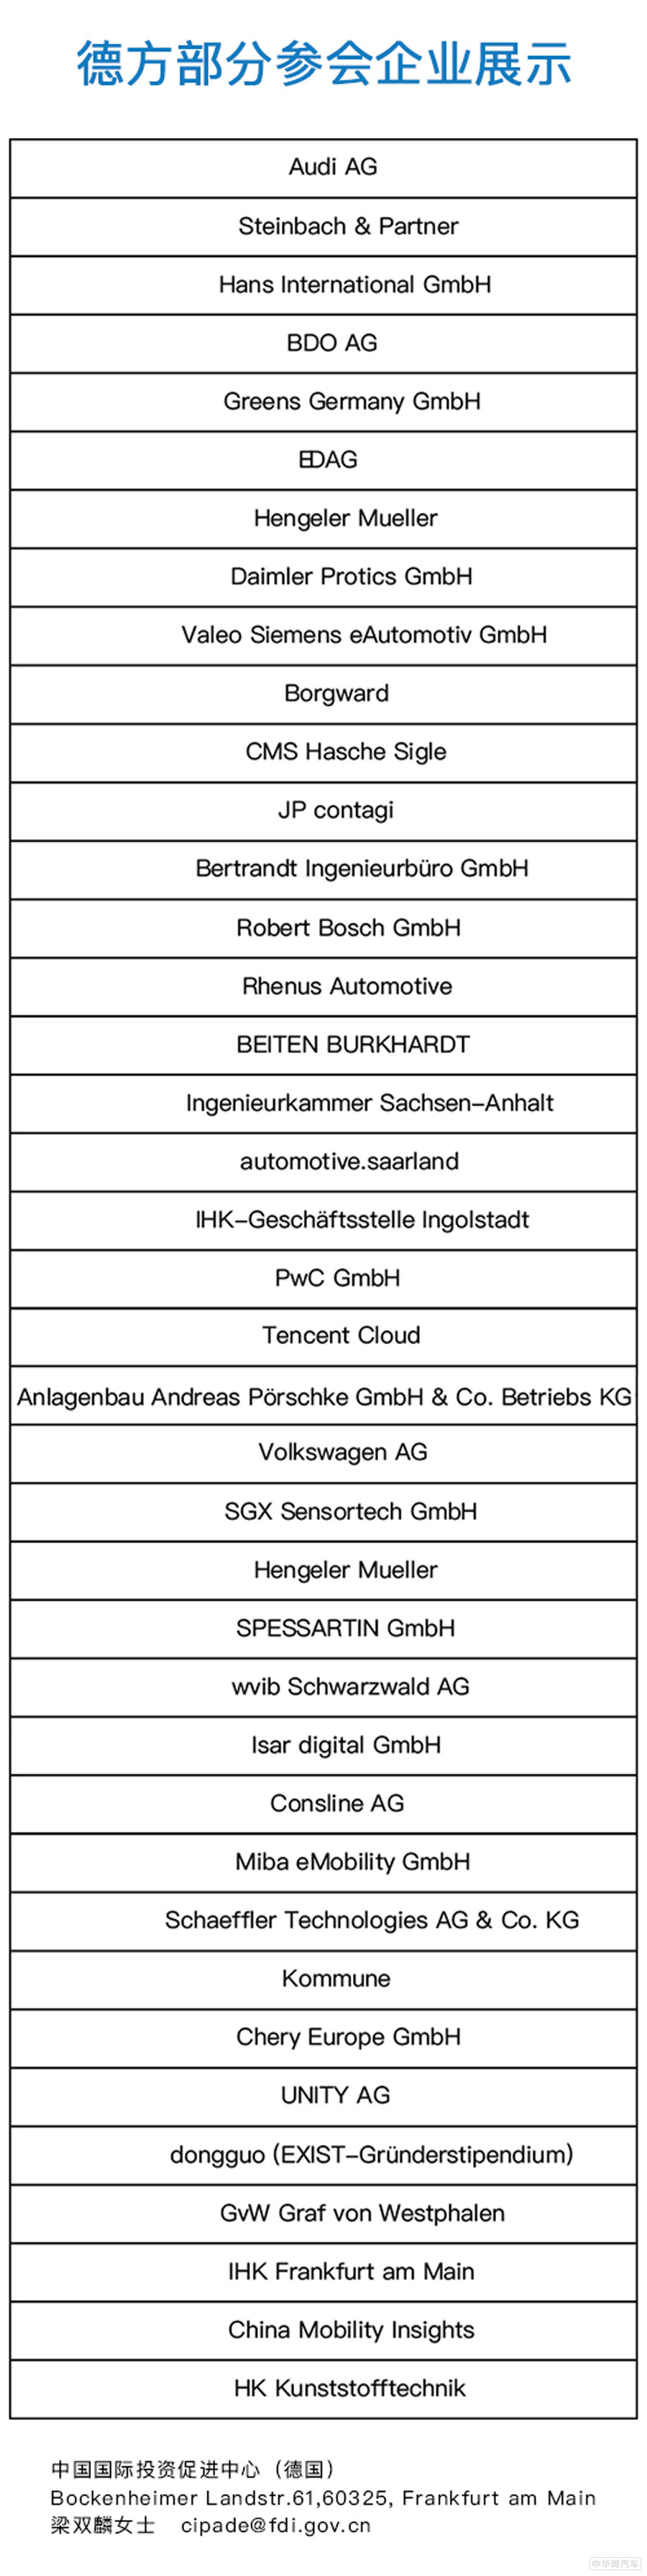 汇聚资源，搭建平台 第三届中德汽车大会将于德国奥迪总部因戈尔施塔特市举办